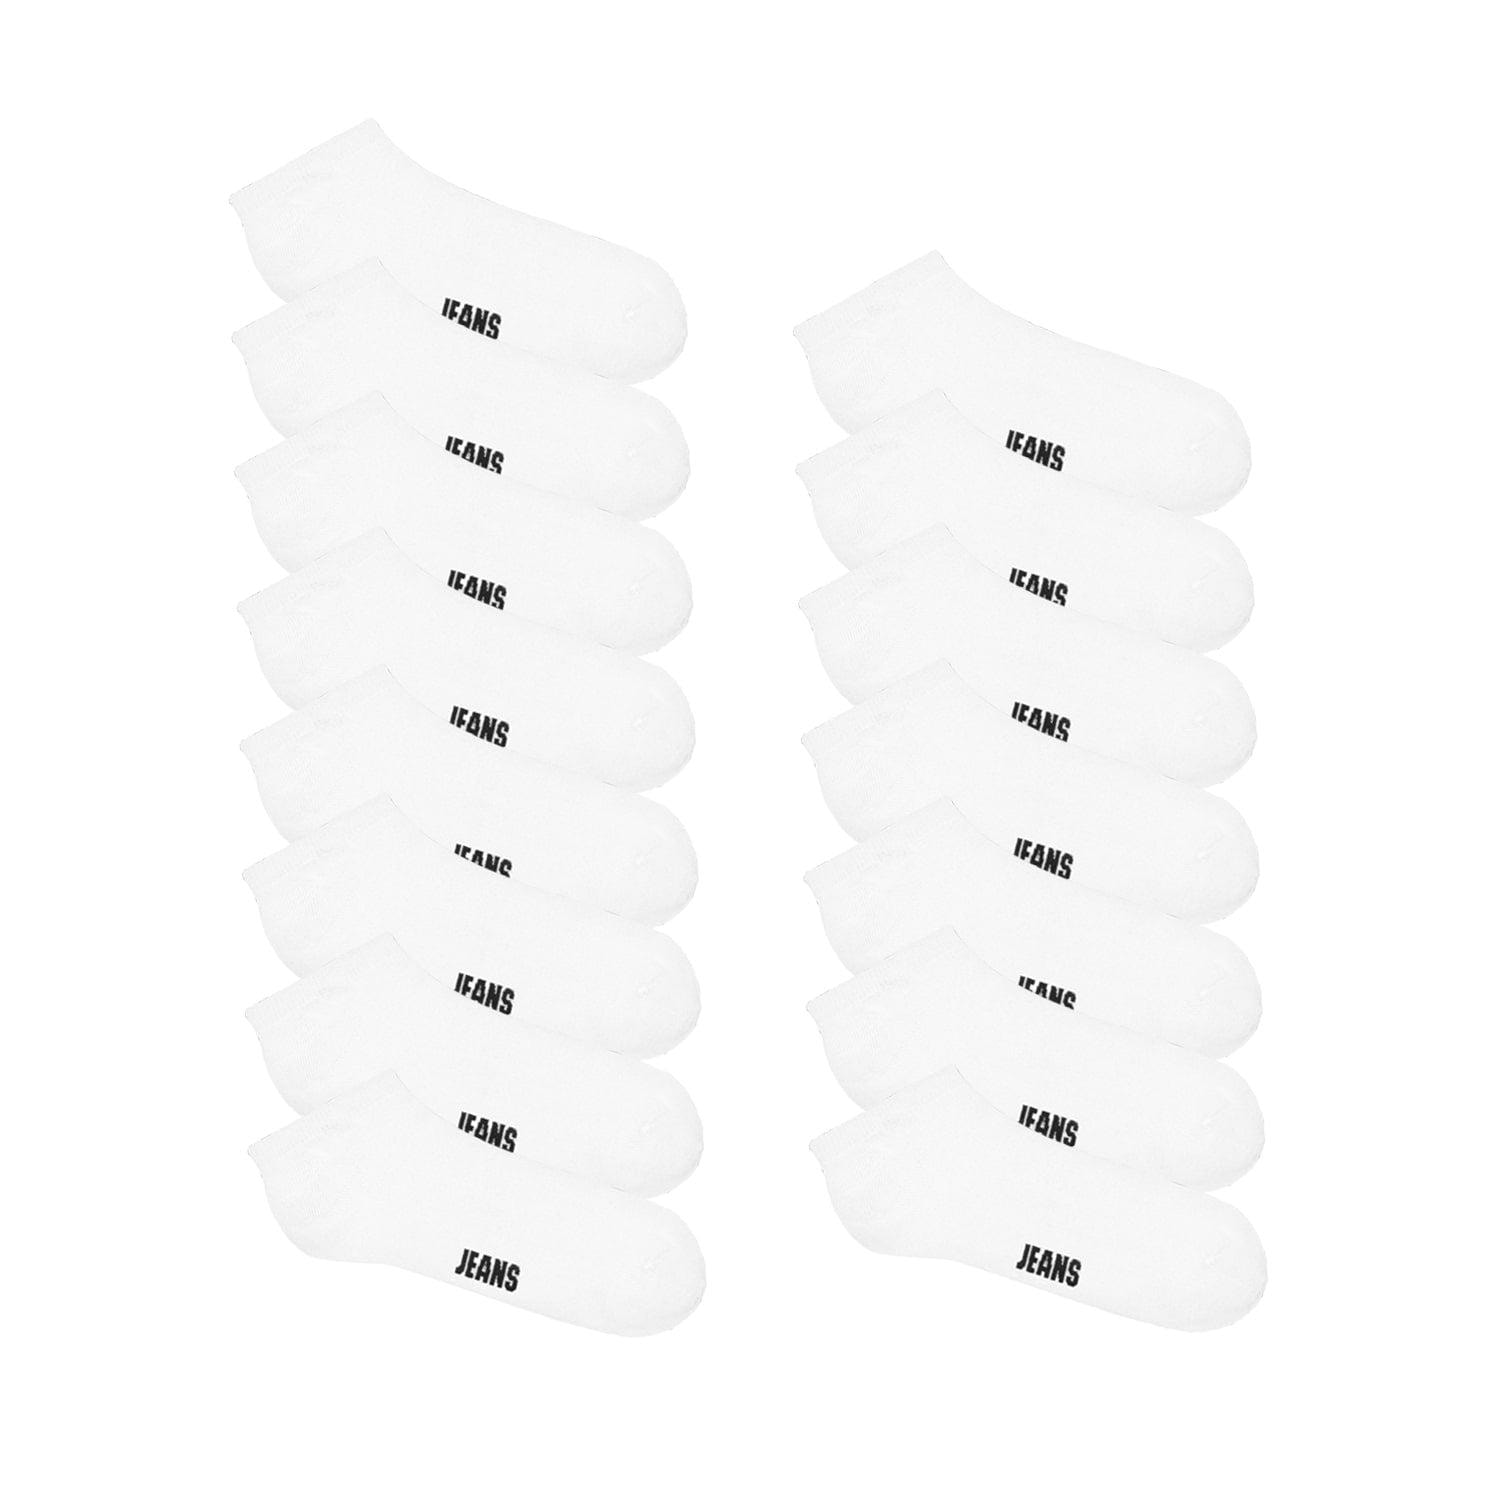 Basic Low-Cut Socks 15-Pack (1 av 2)